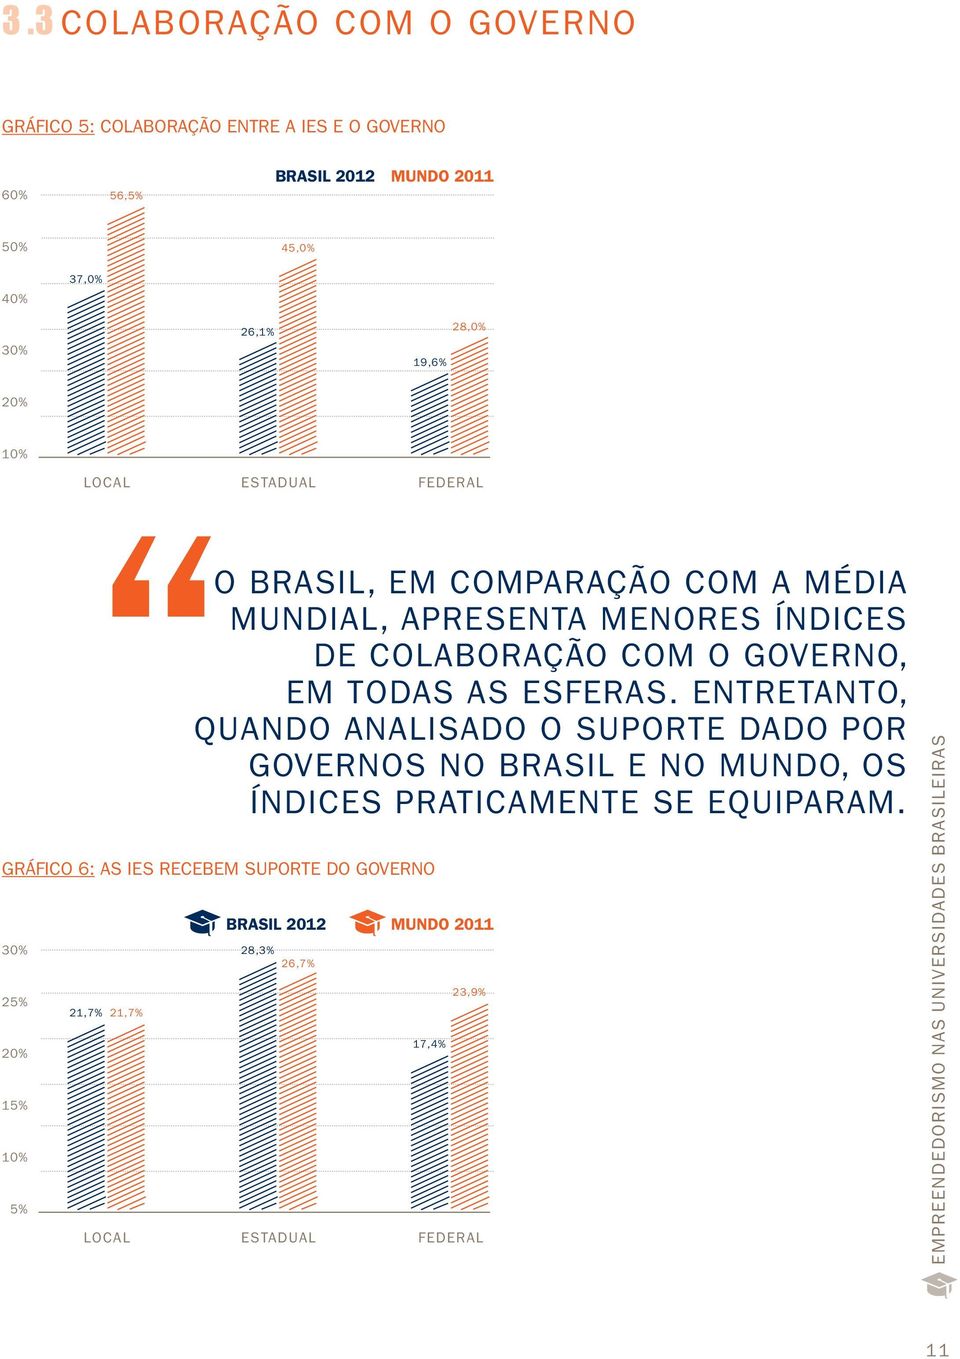 em todas as esferas. entretanto, Quando analisado o suporte dado por Governos no Brasil e no mundo, os índices praticamente se equiparam.